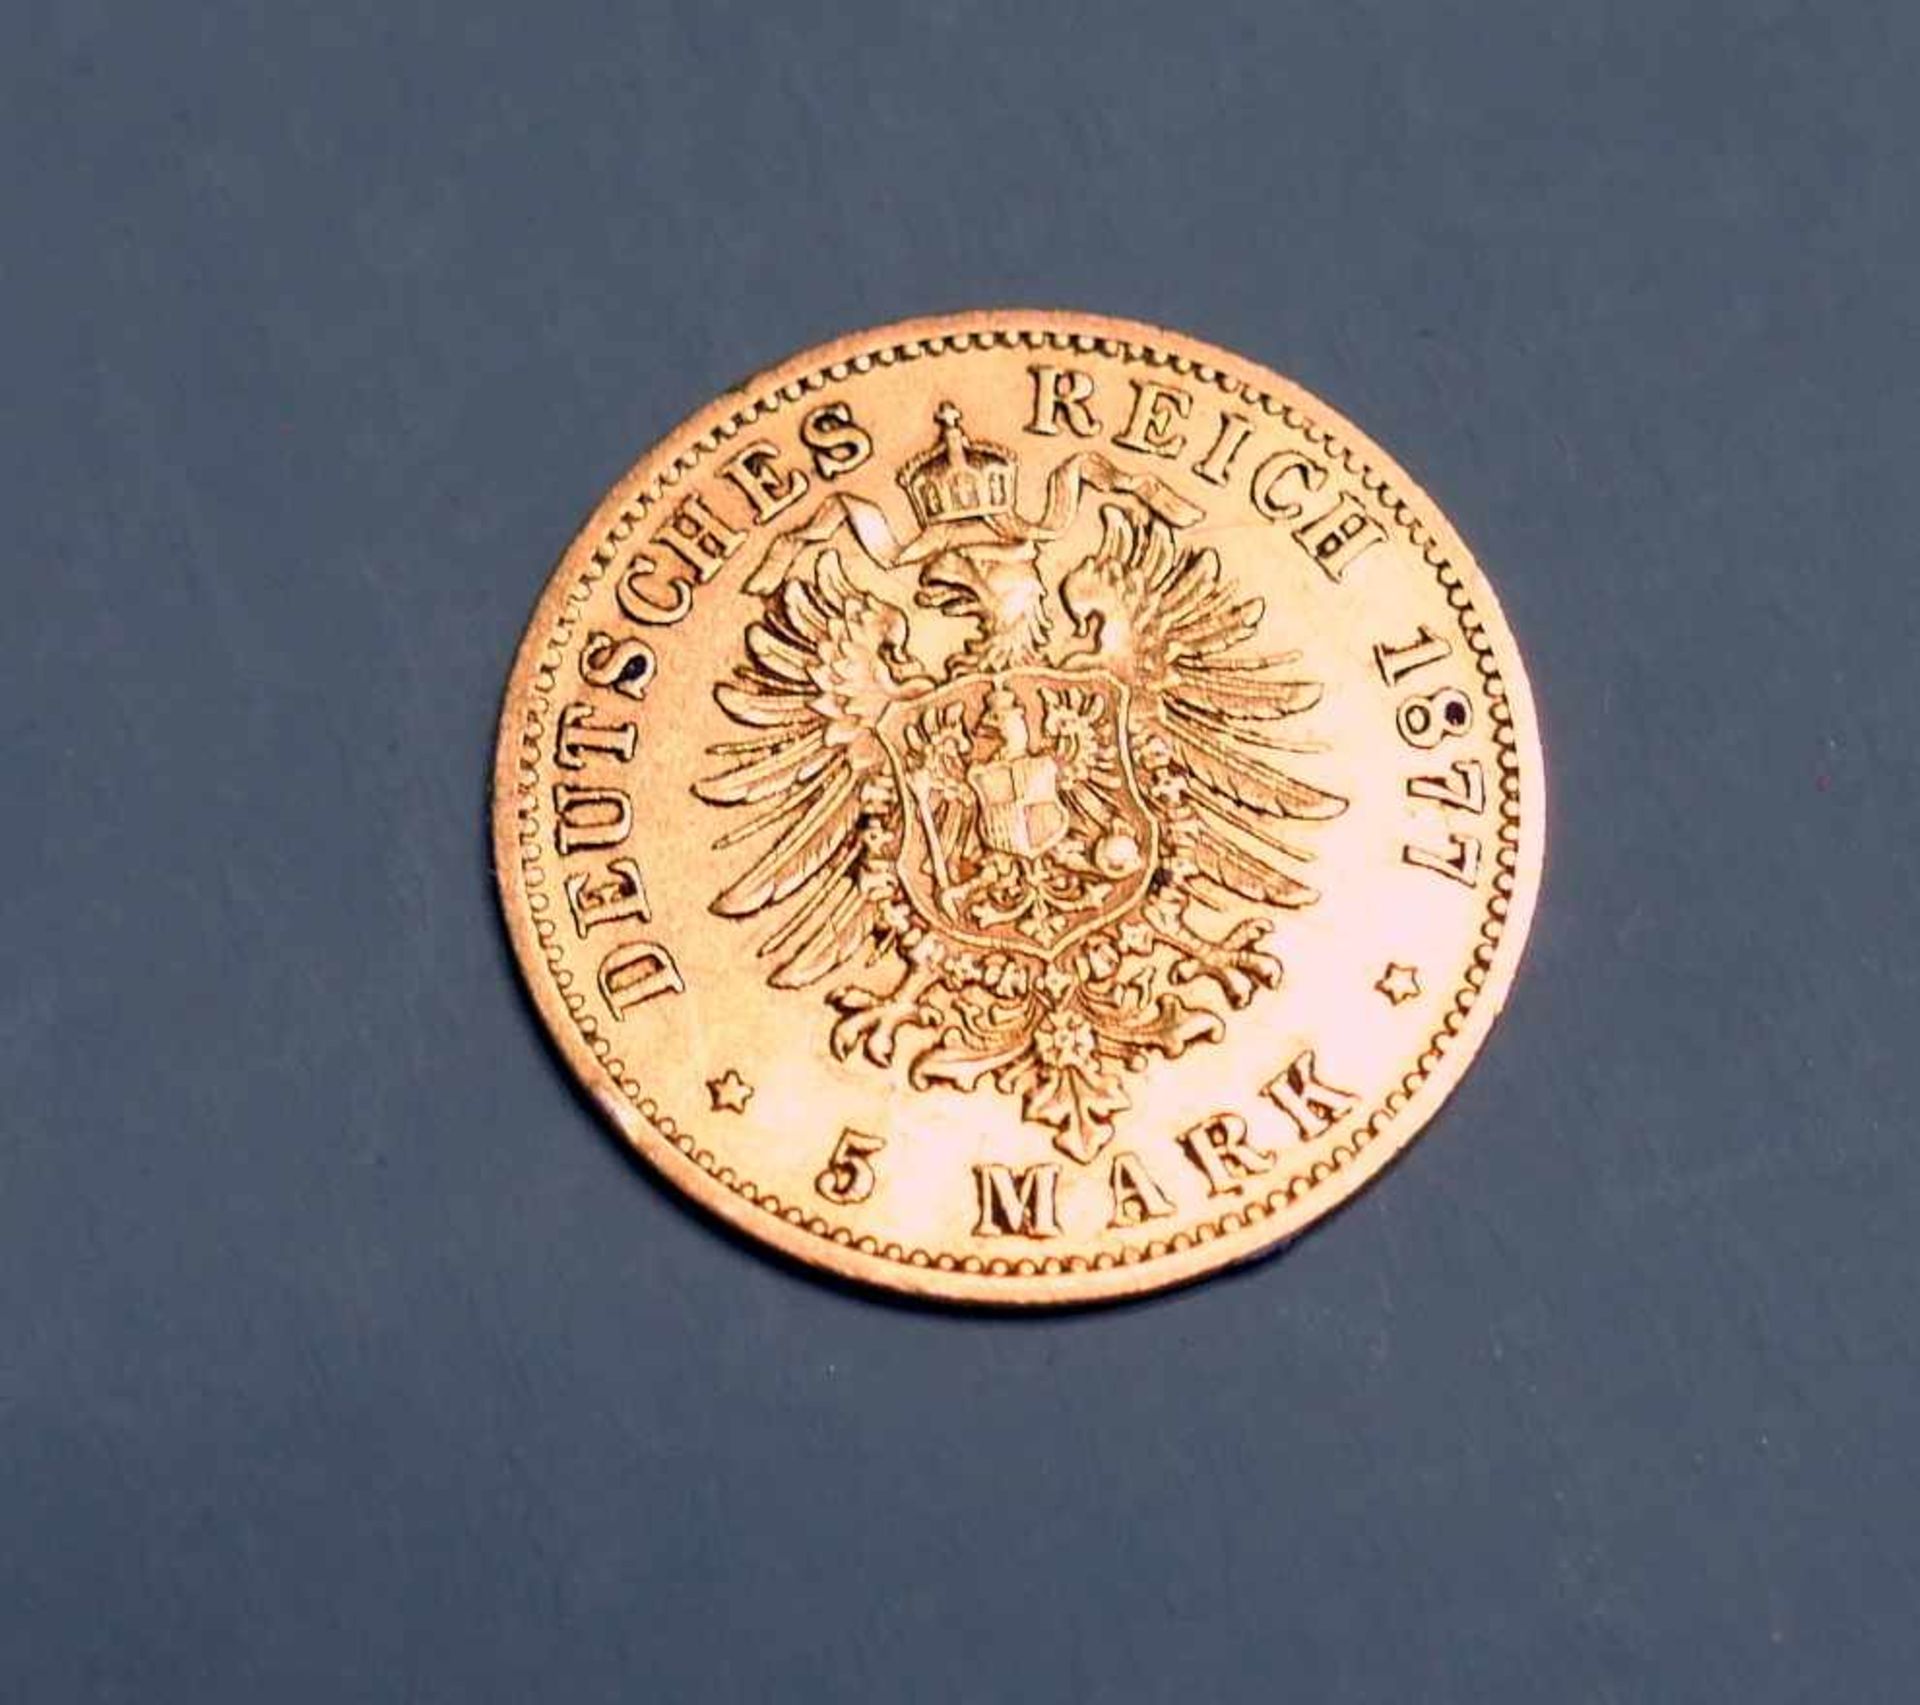 Goldmünze, 5 ReichsmarkGold. 5 Mark, Wilhelm deutscher Kaiser König v. Preussen. B. Deutschland, - Image 2 of 2